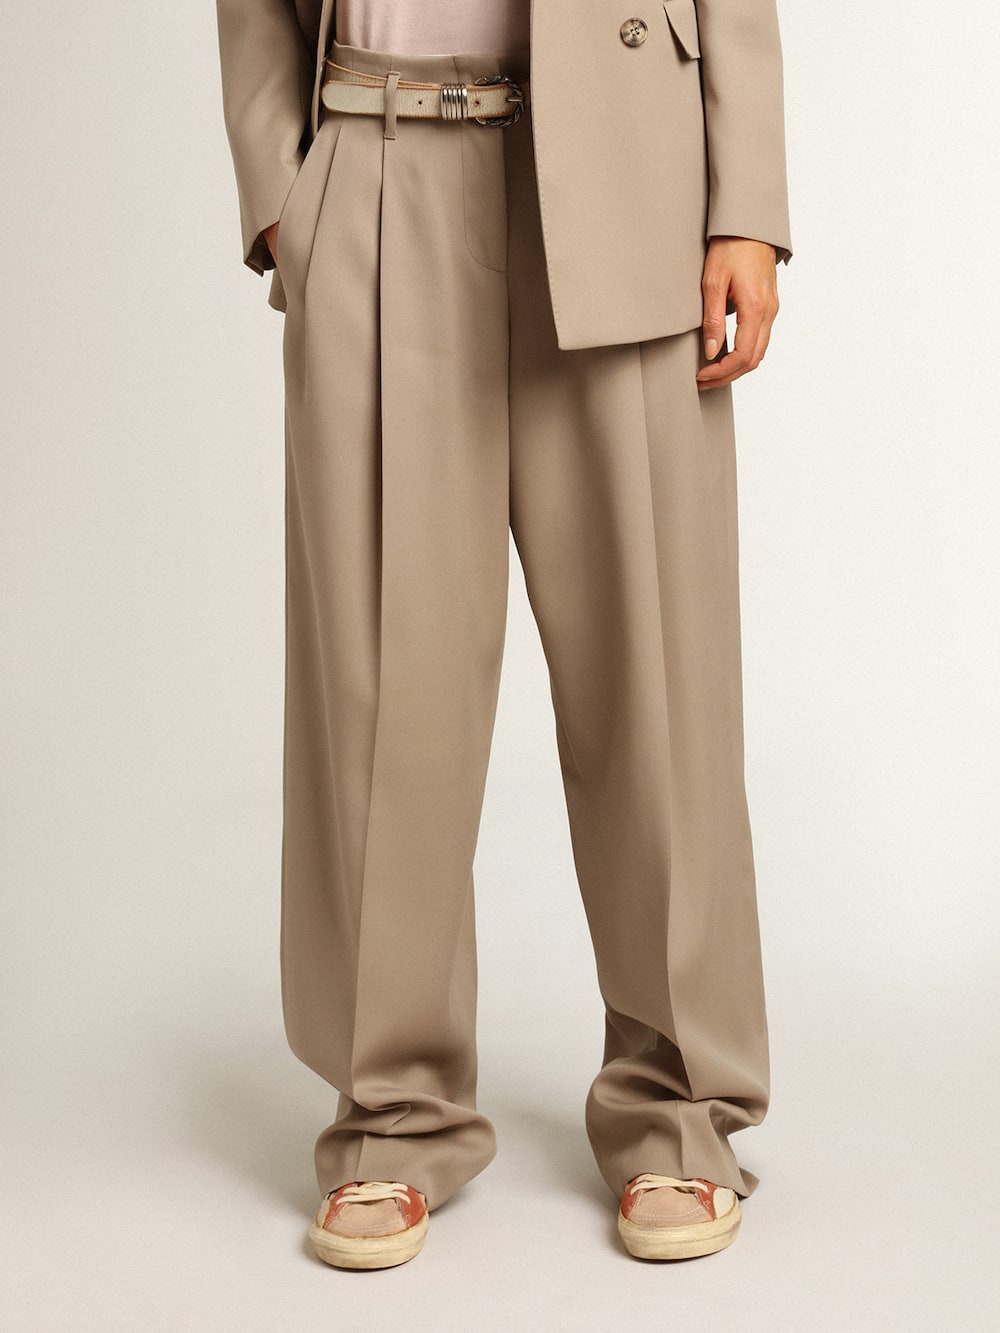 Golden Goose - Pantalone in gabardine di lana color beige chiaro in 